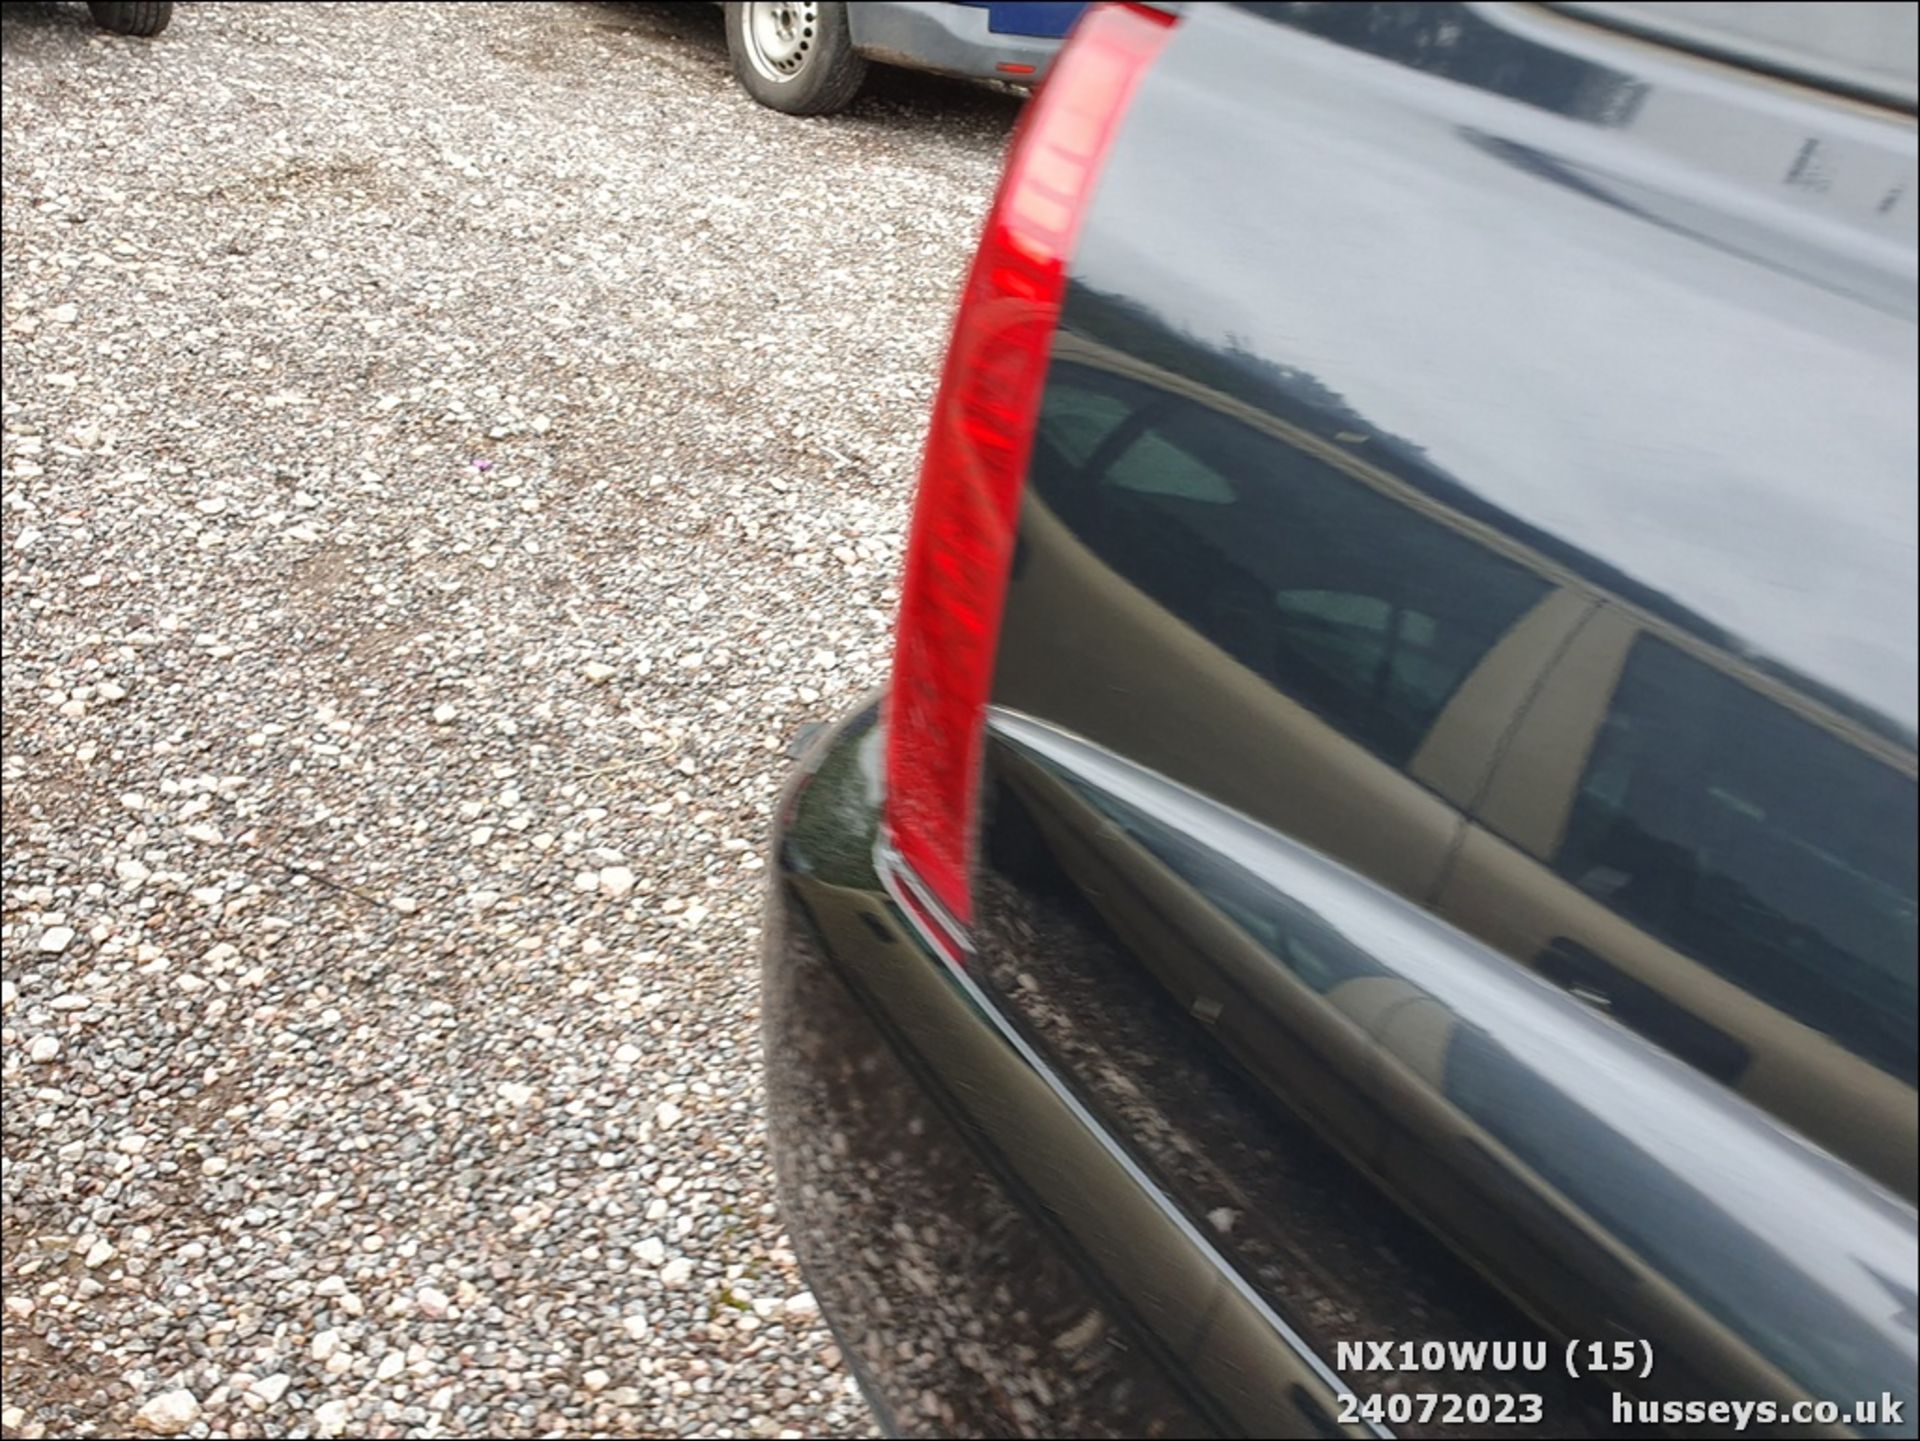 10/10 KIA SPORTAGE XE CRDI 4WD - 1991cc 5dr Estate (Black, 125k) - Image 15 of 46